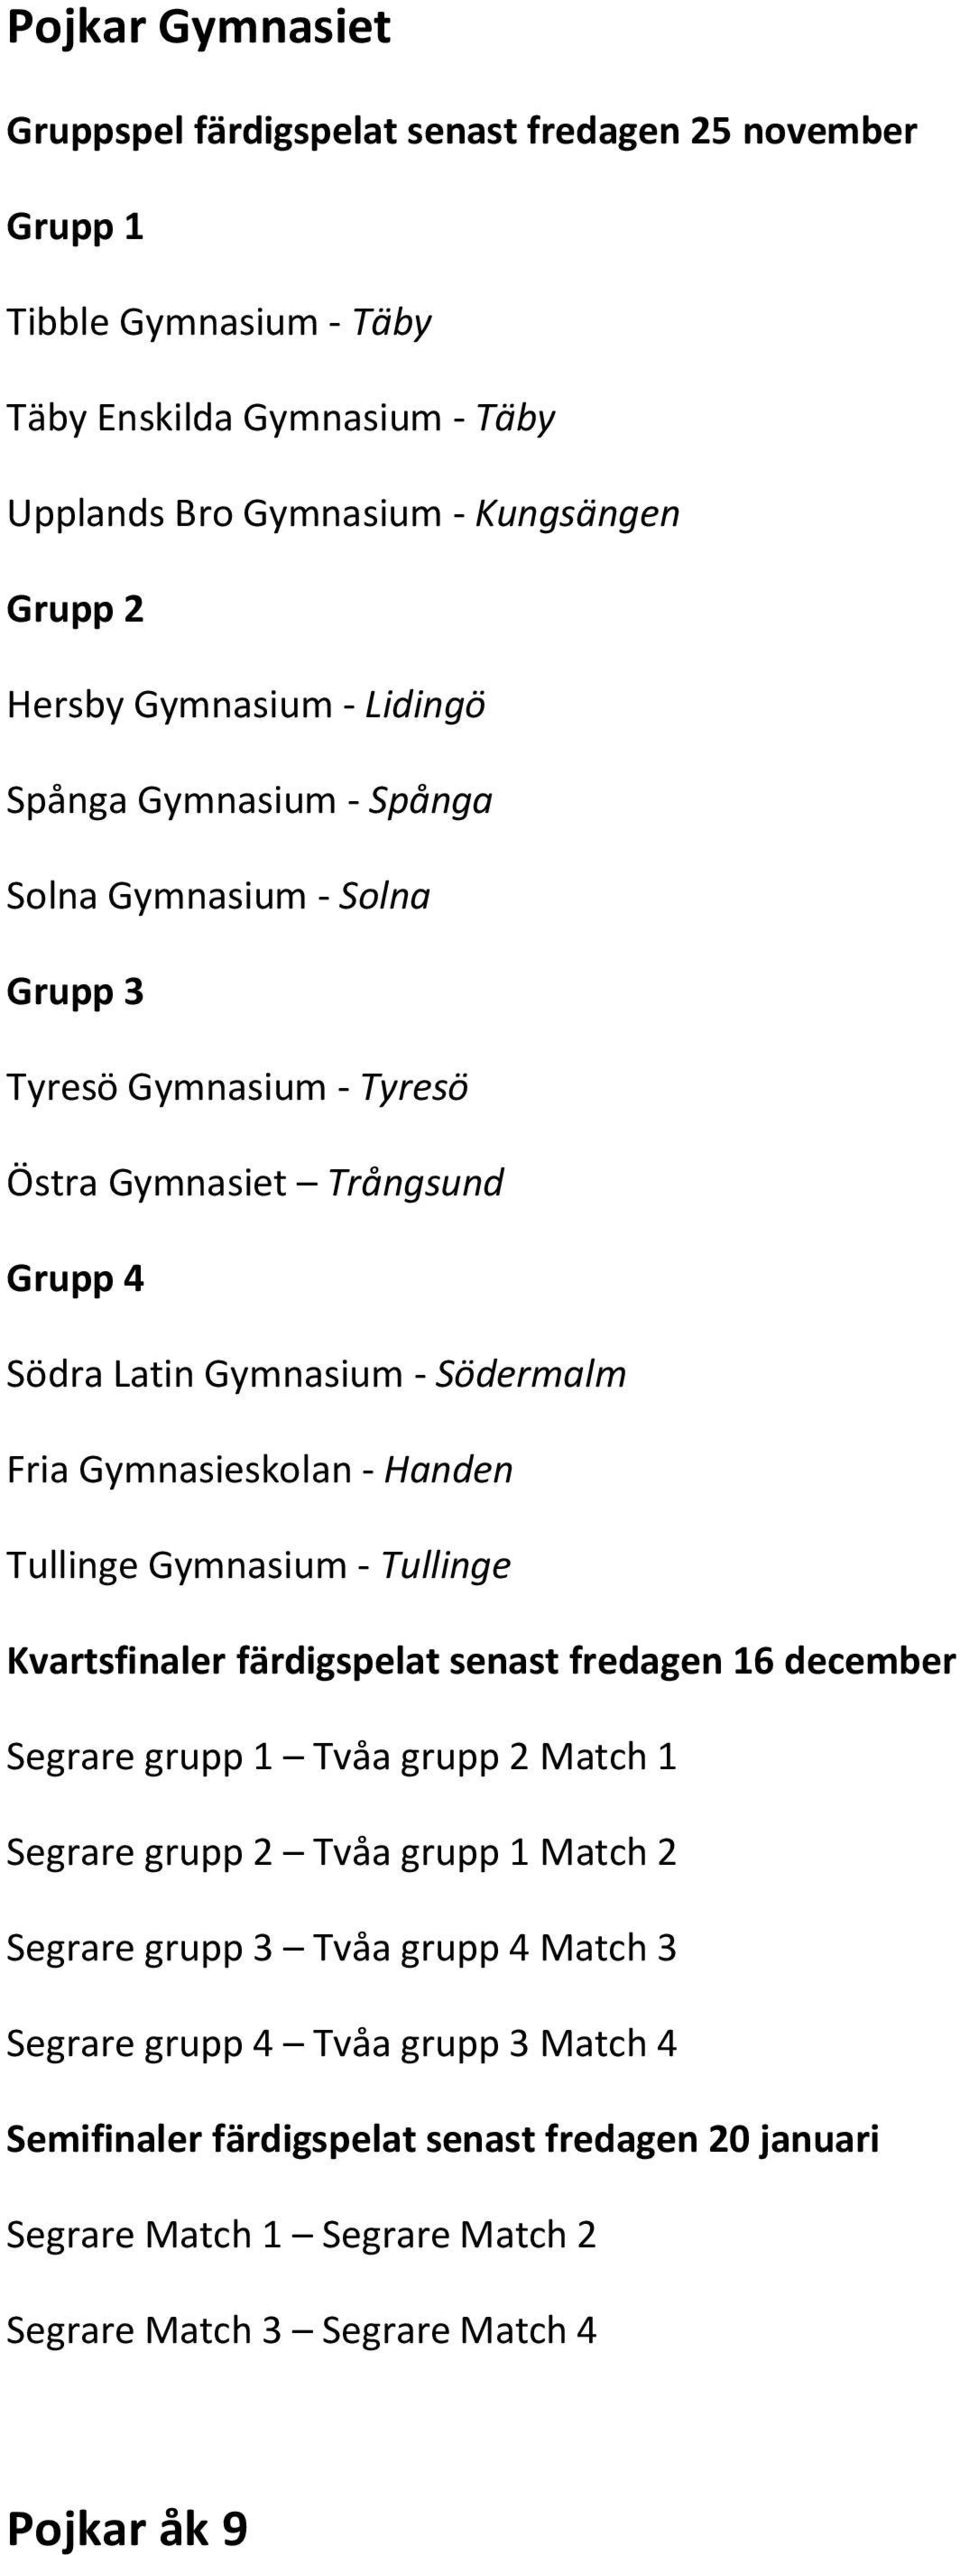 Handen Tullinge Gymnasium - Tullinge Kvartsfinaler färdigspelat senast fredagen 16 december Match 1 Match 2 Segrare grupp 3 Tvåa grupp 4 Match 3 Segrare